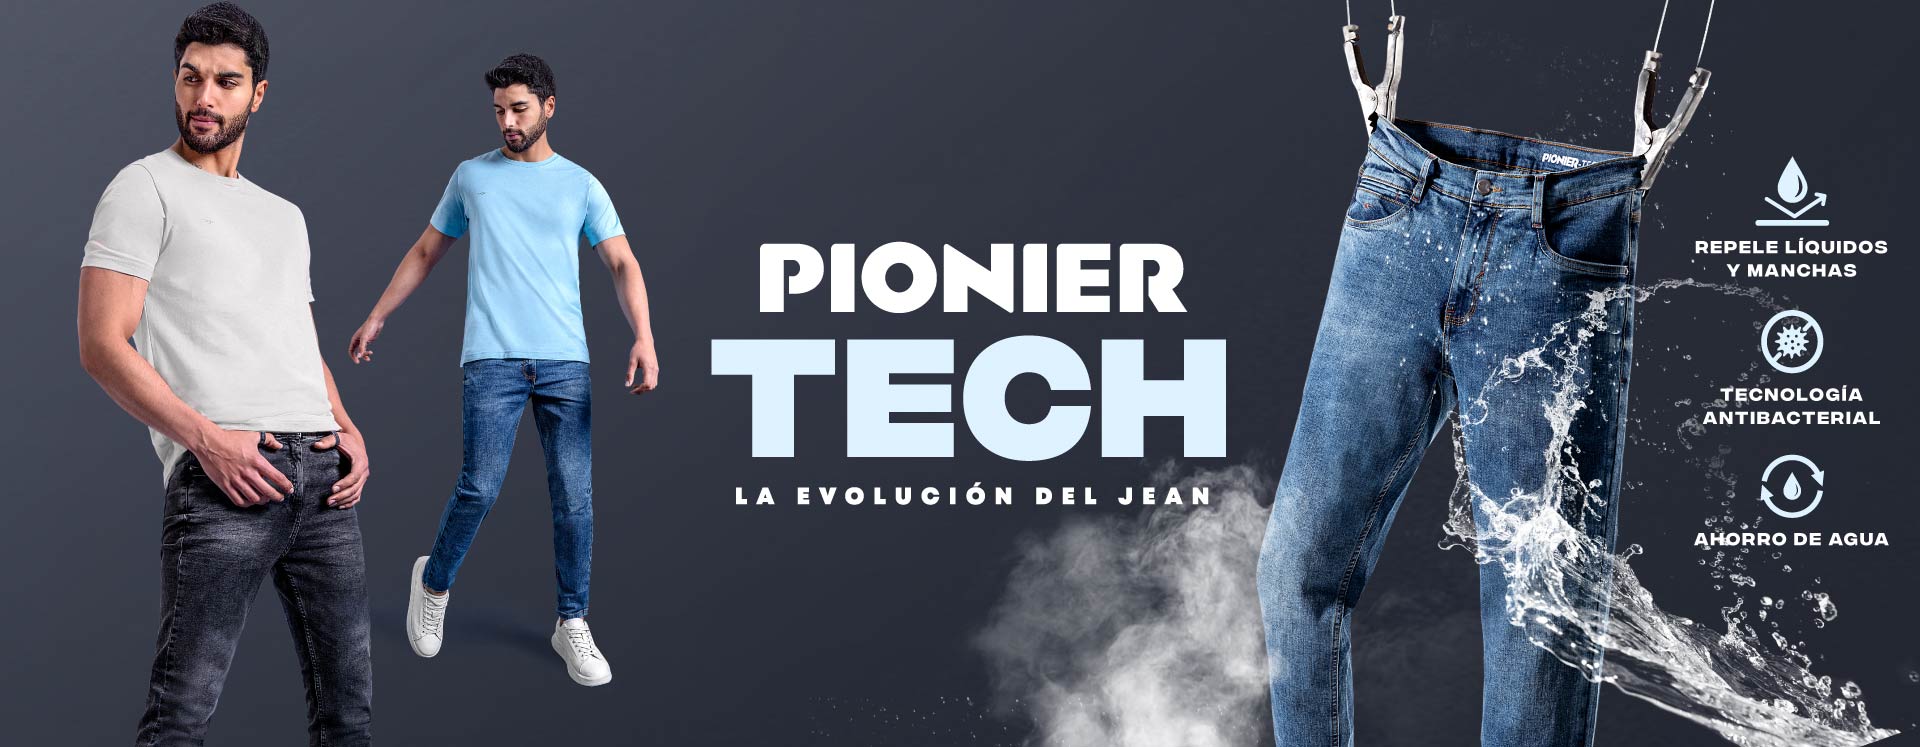 Pionier-Tech